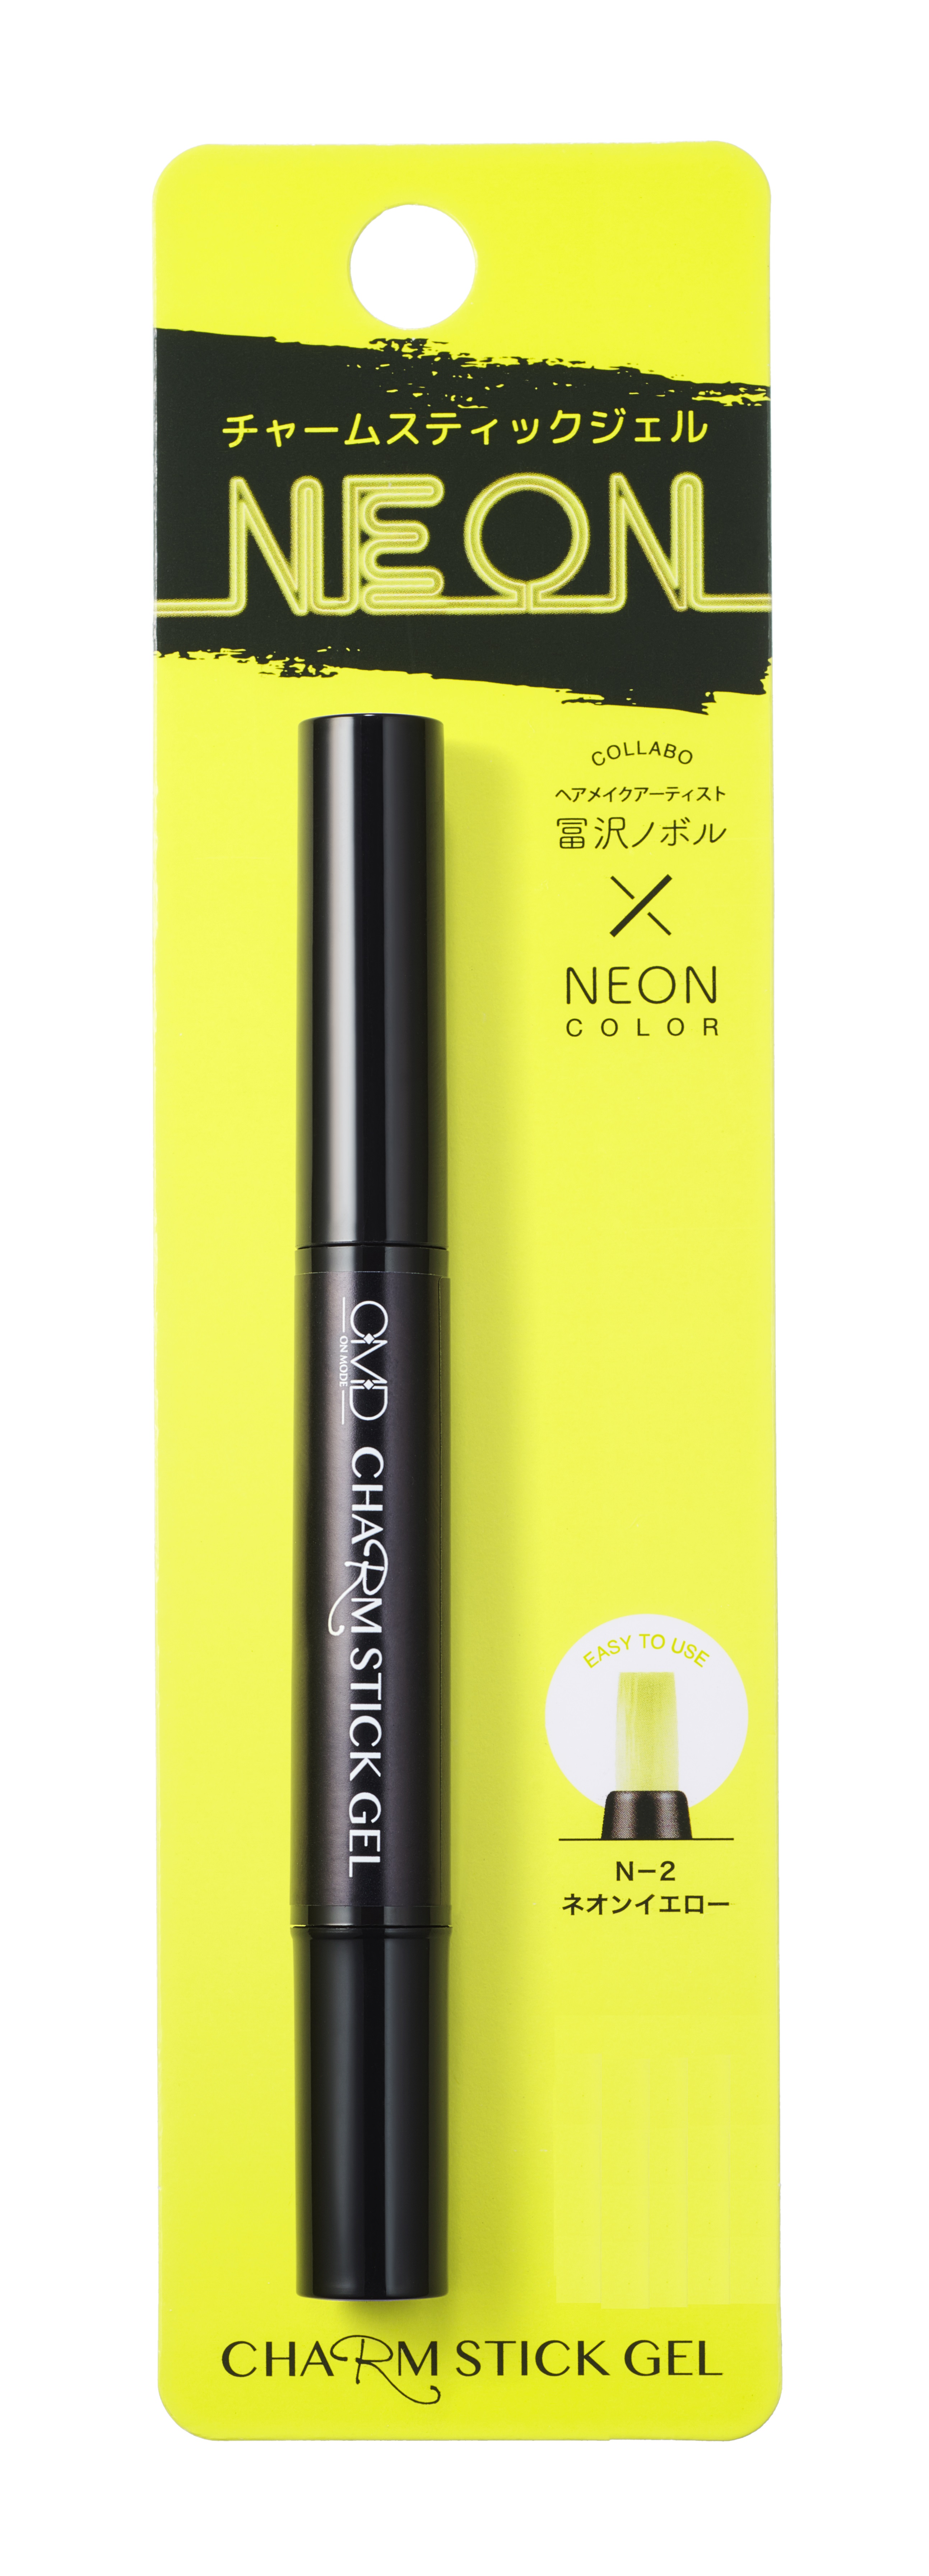 Гель-лак Для Ногтей OMD Charm Stick Gel N-2 Yellow Neon 4шт винтаж градиентные ручки набор быстросохнущее гель чернильная ручка и флуоресцентный маркер маркер рисование краска офис a6458